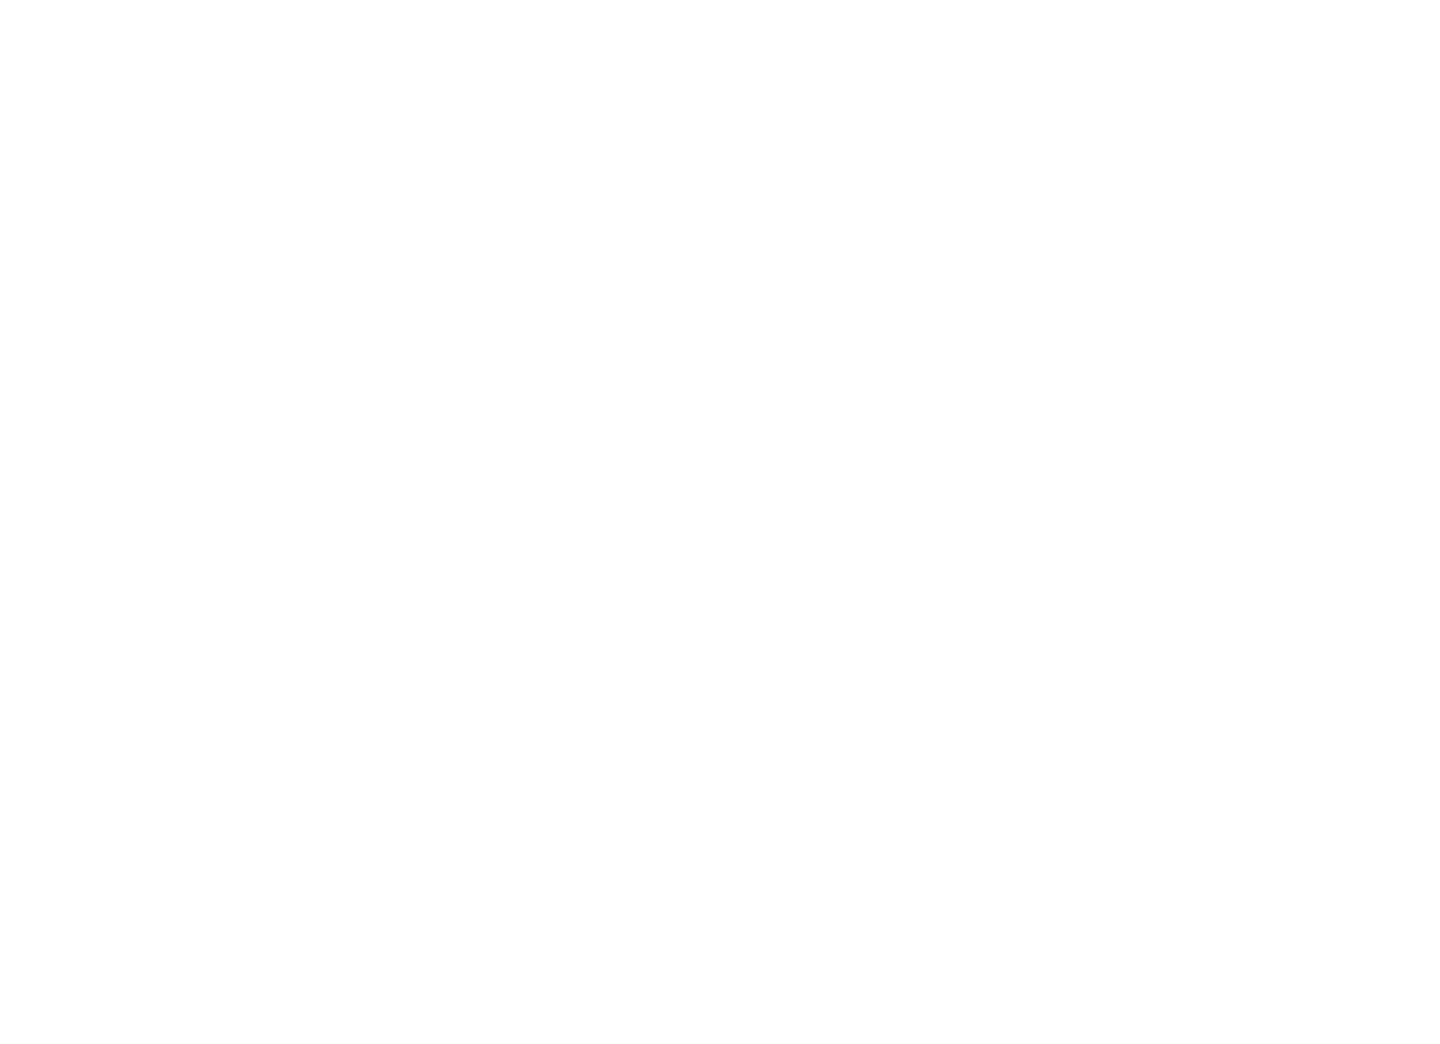 Ломанов Андрей Анатольевич. DermX Summit "Міжнародний науково-практичний вірнуальний самміт для лікарів всіх спеціальностей та паціентів з питань дерматології", 29 - 31 жовтня 2021 року